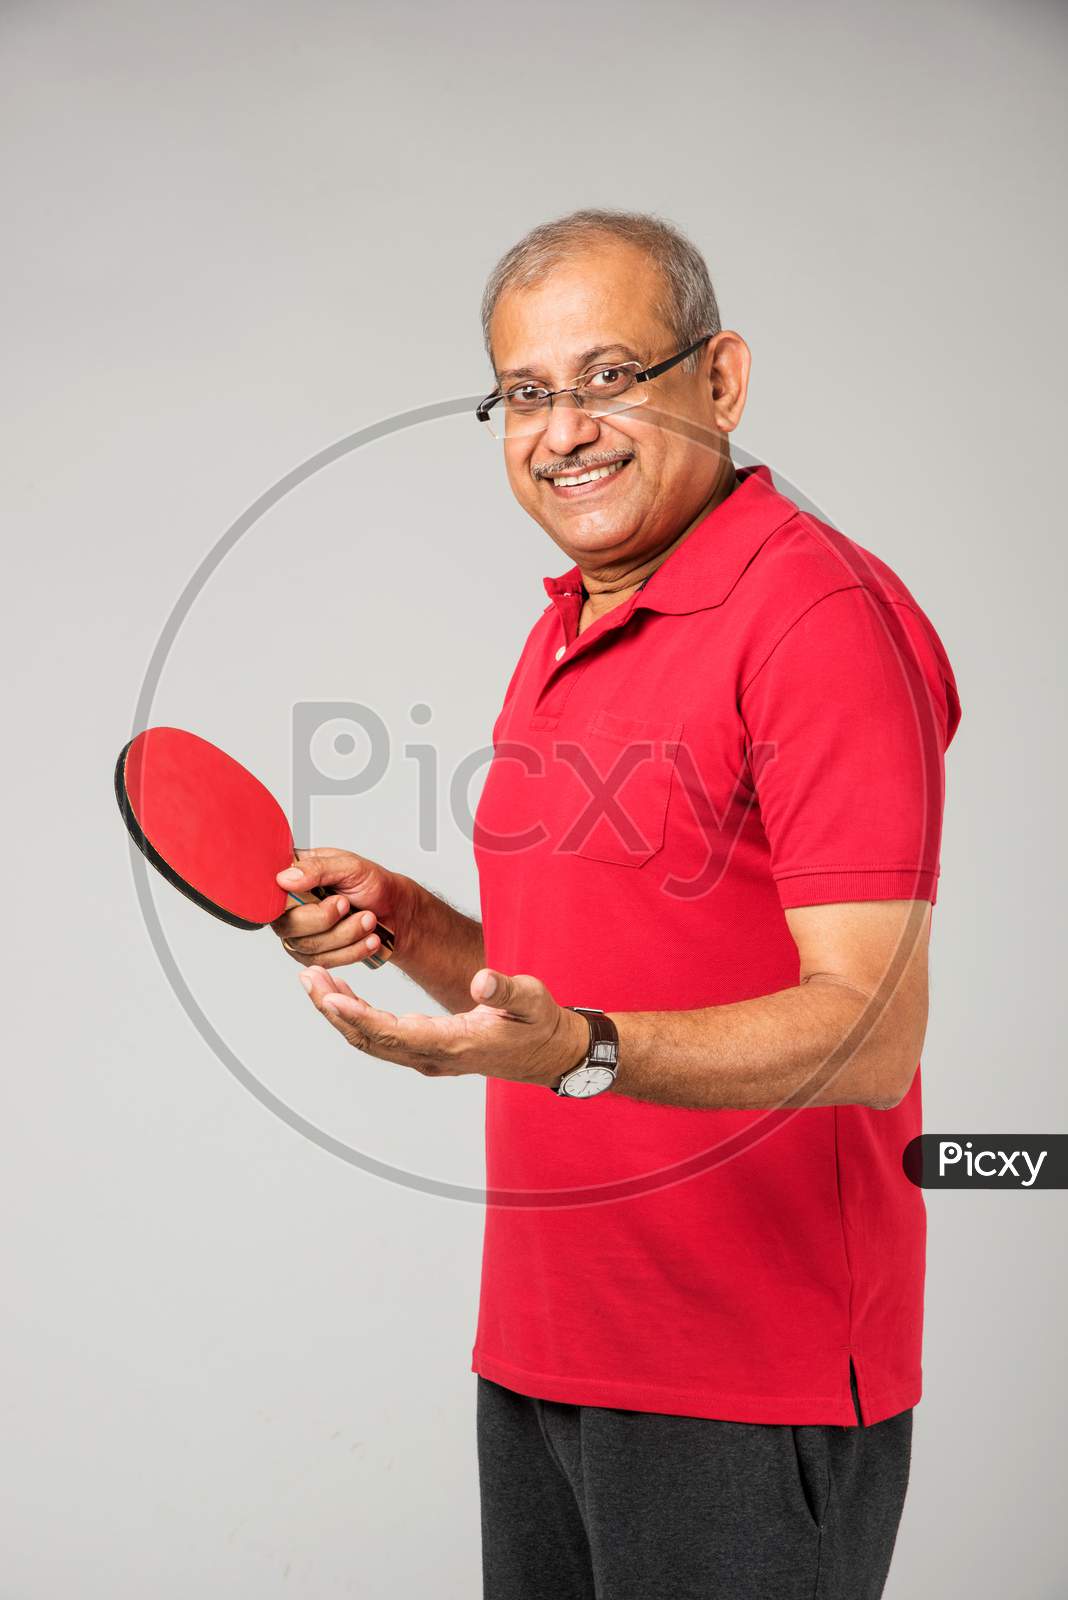 Senior indian man playing table tennis